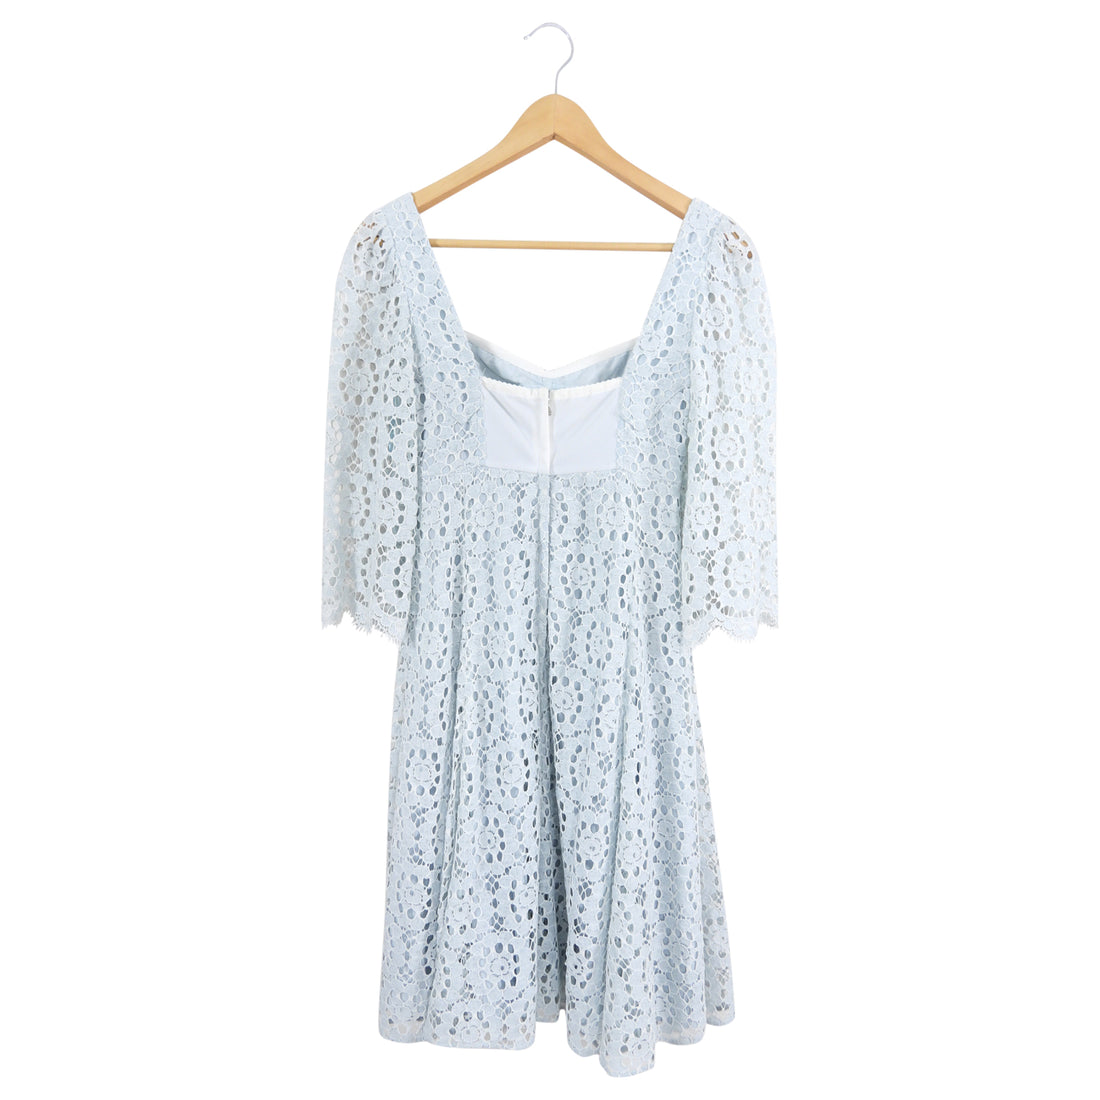 Dolce & Gabbana Light Blue Lace Dress - IT36 / USA 0 / XS